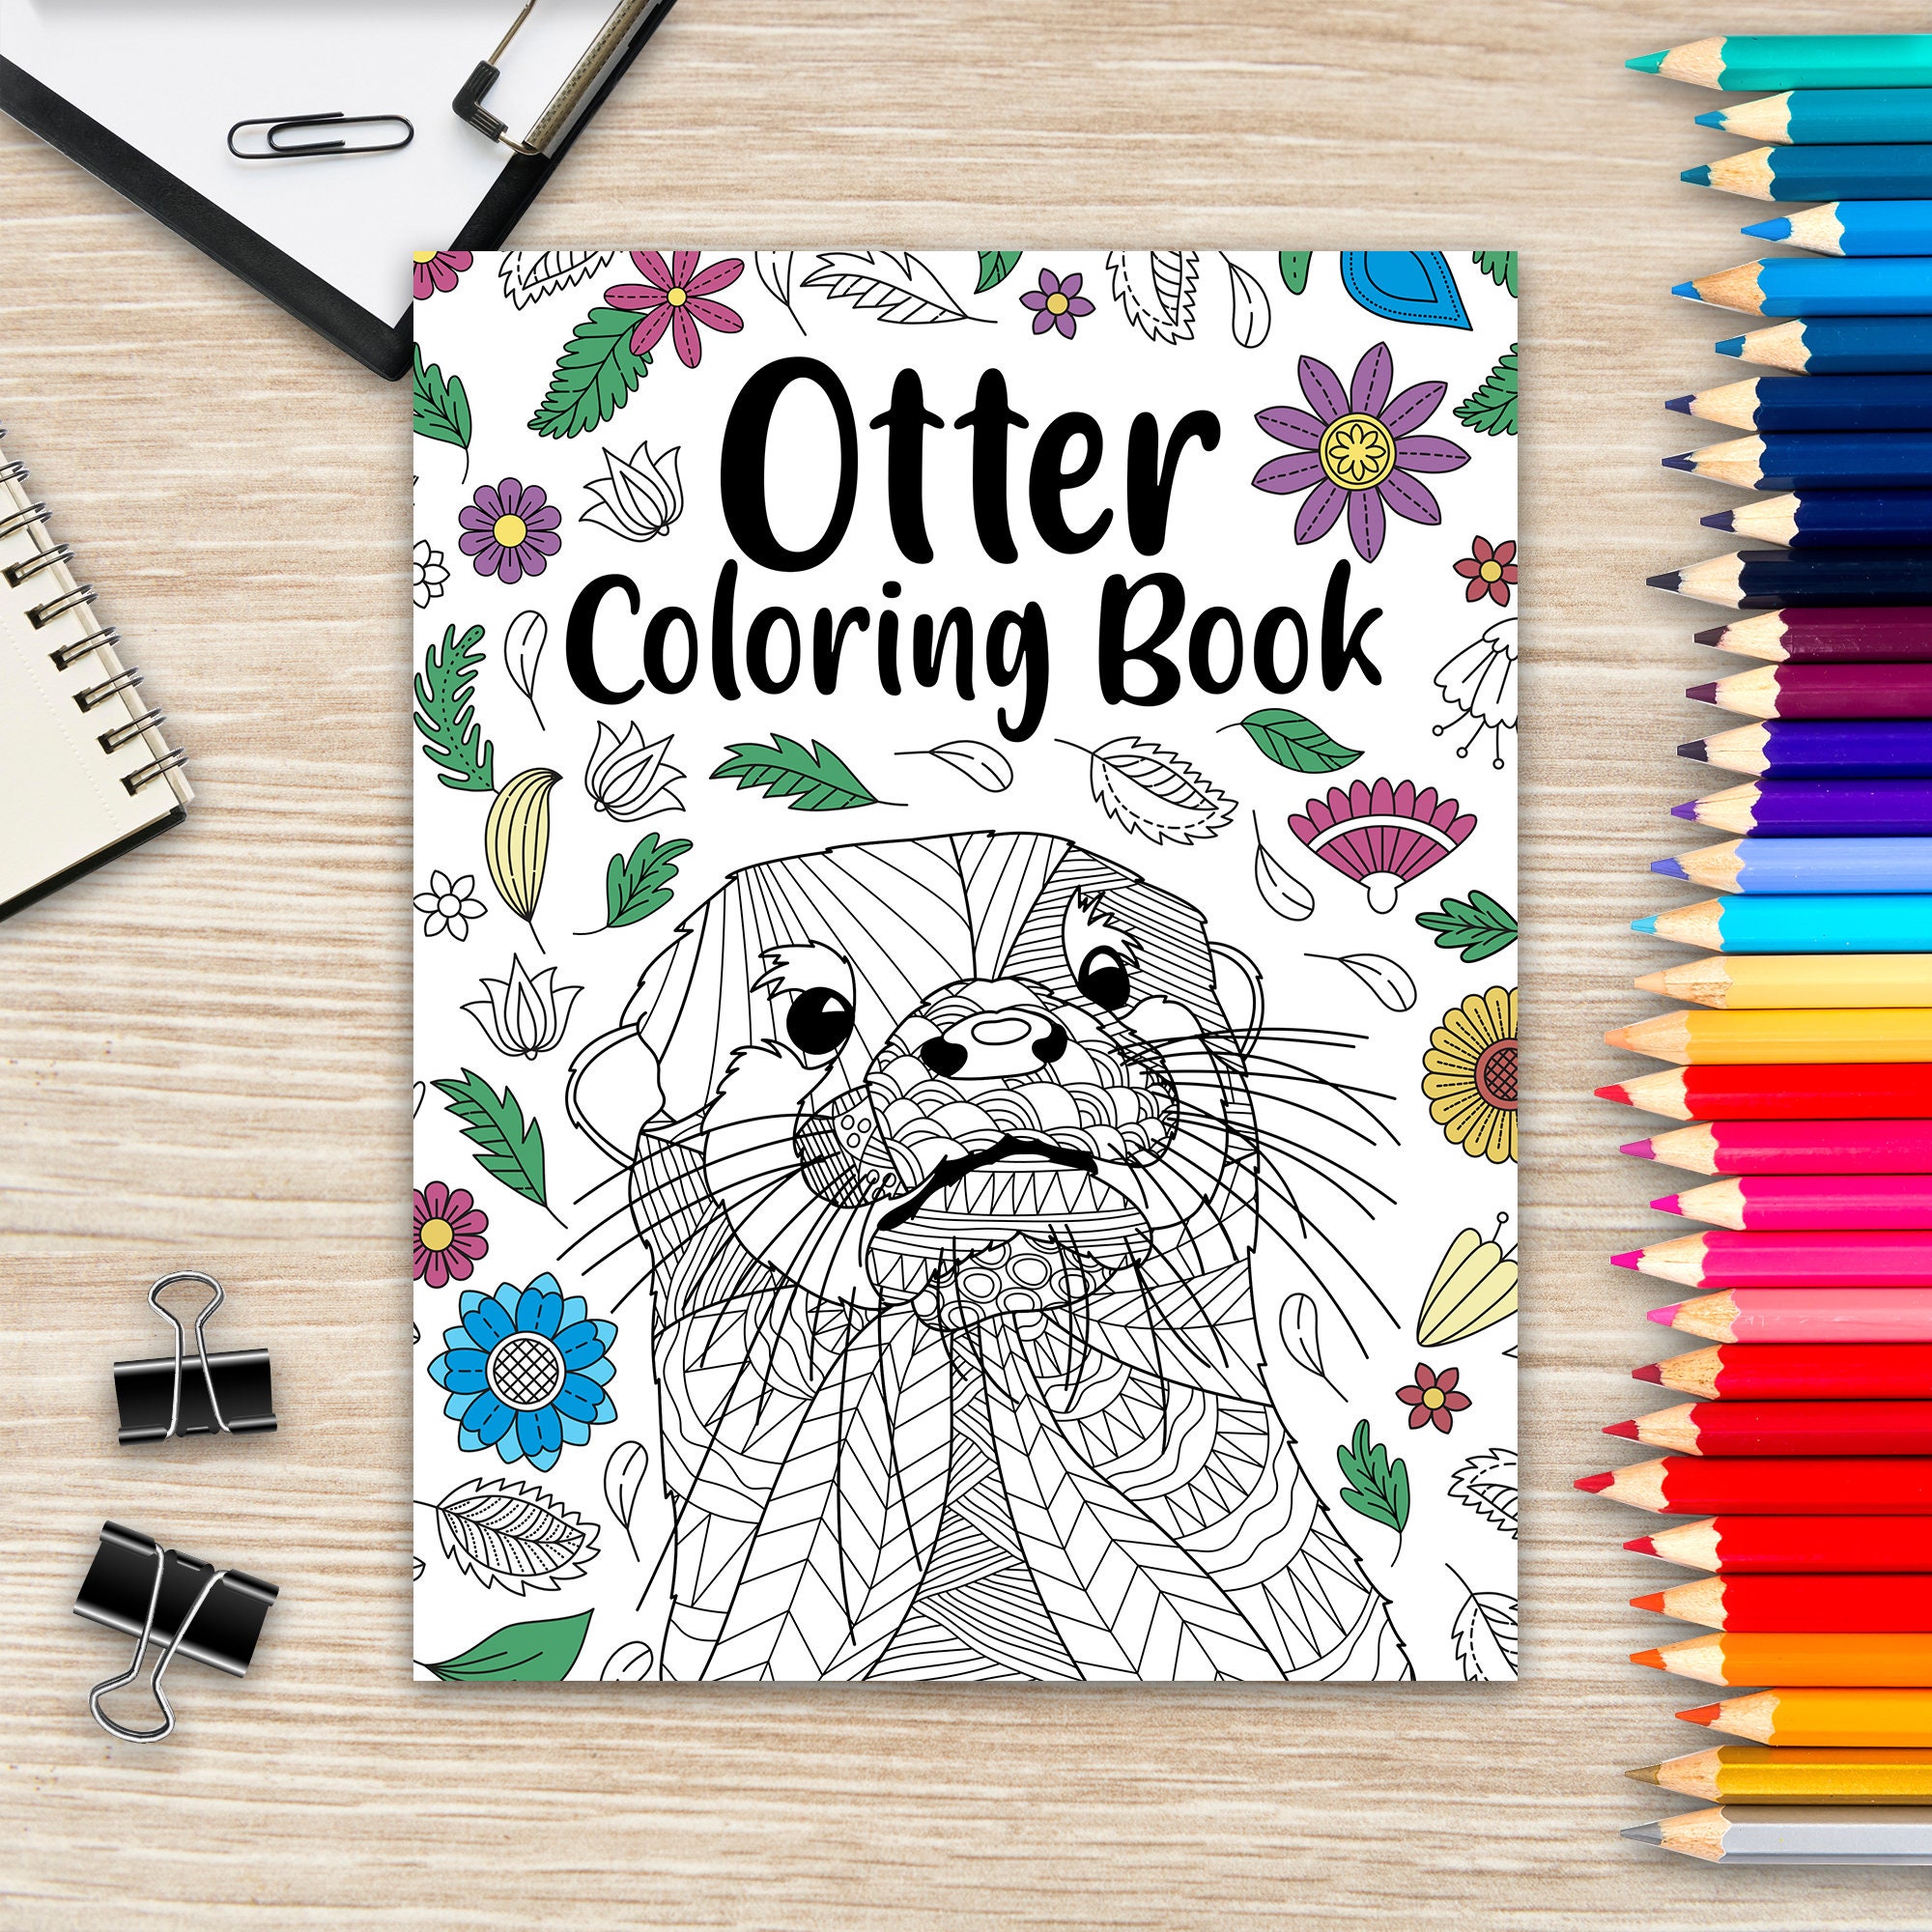 J'aime colorier - Loutres - Livre de coloriage pour enfants – De 3